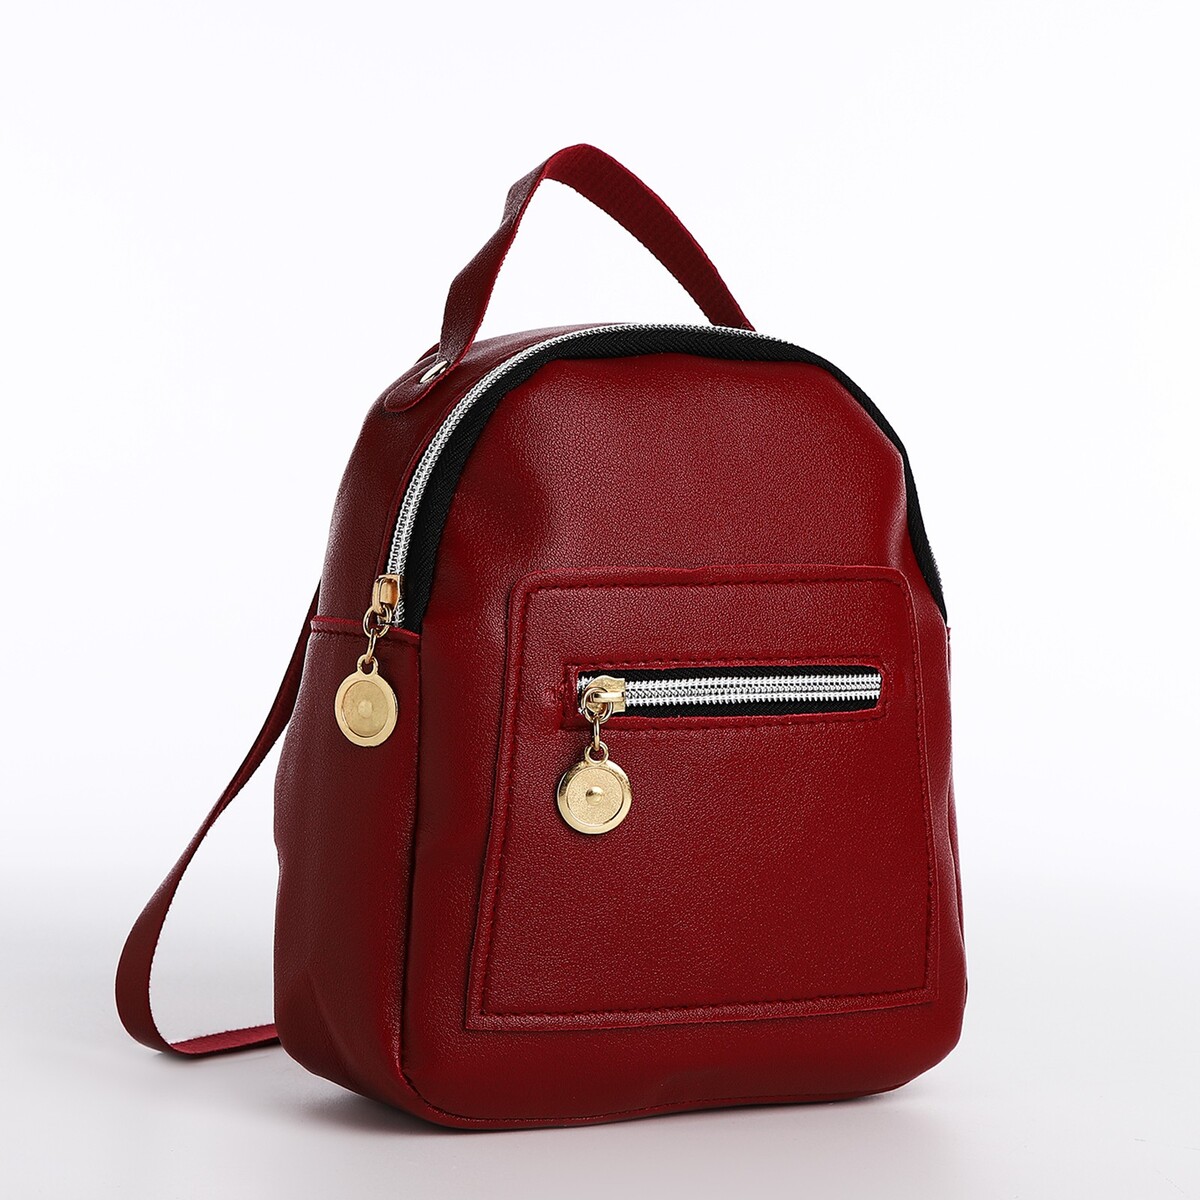 Мини-рюкзак женский из искусственной кожи на молнии, 1 карман, цвет бордовый pixel bag рюкзак с led дисплеем pixel plus red line бордовый